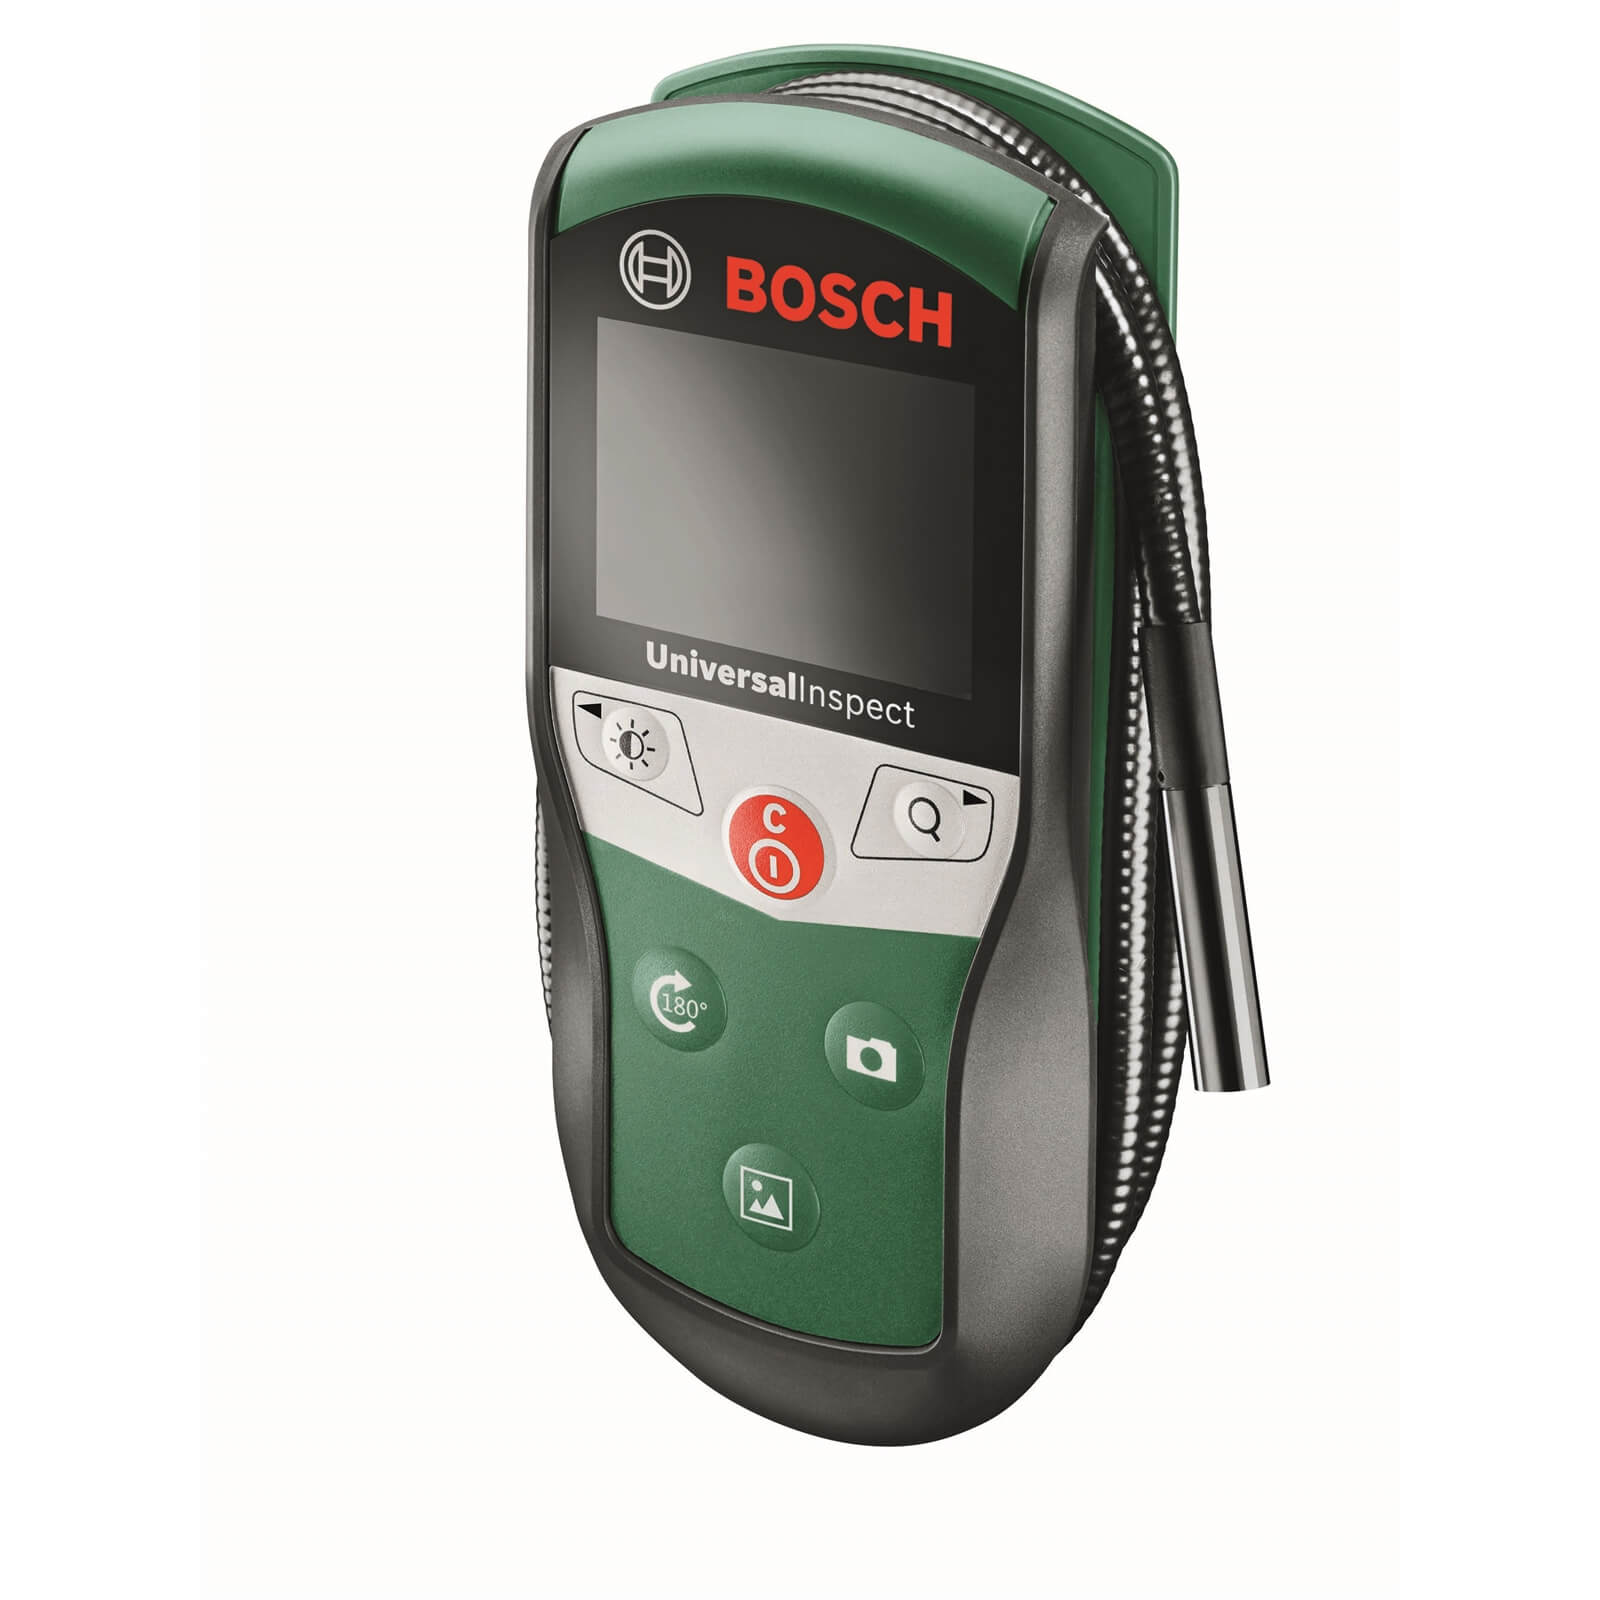 Bosch Universalinspect Inspection Camera